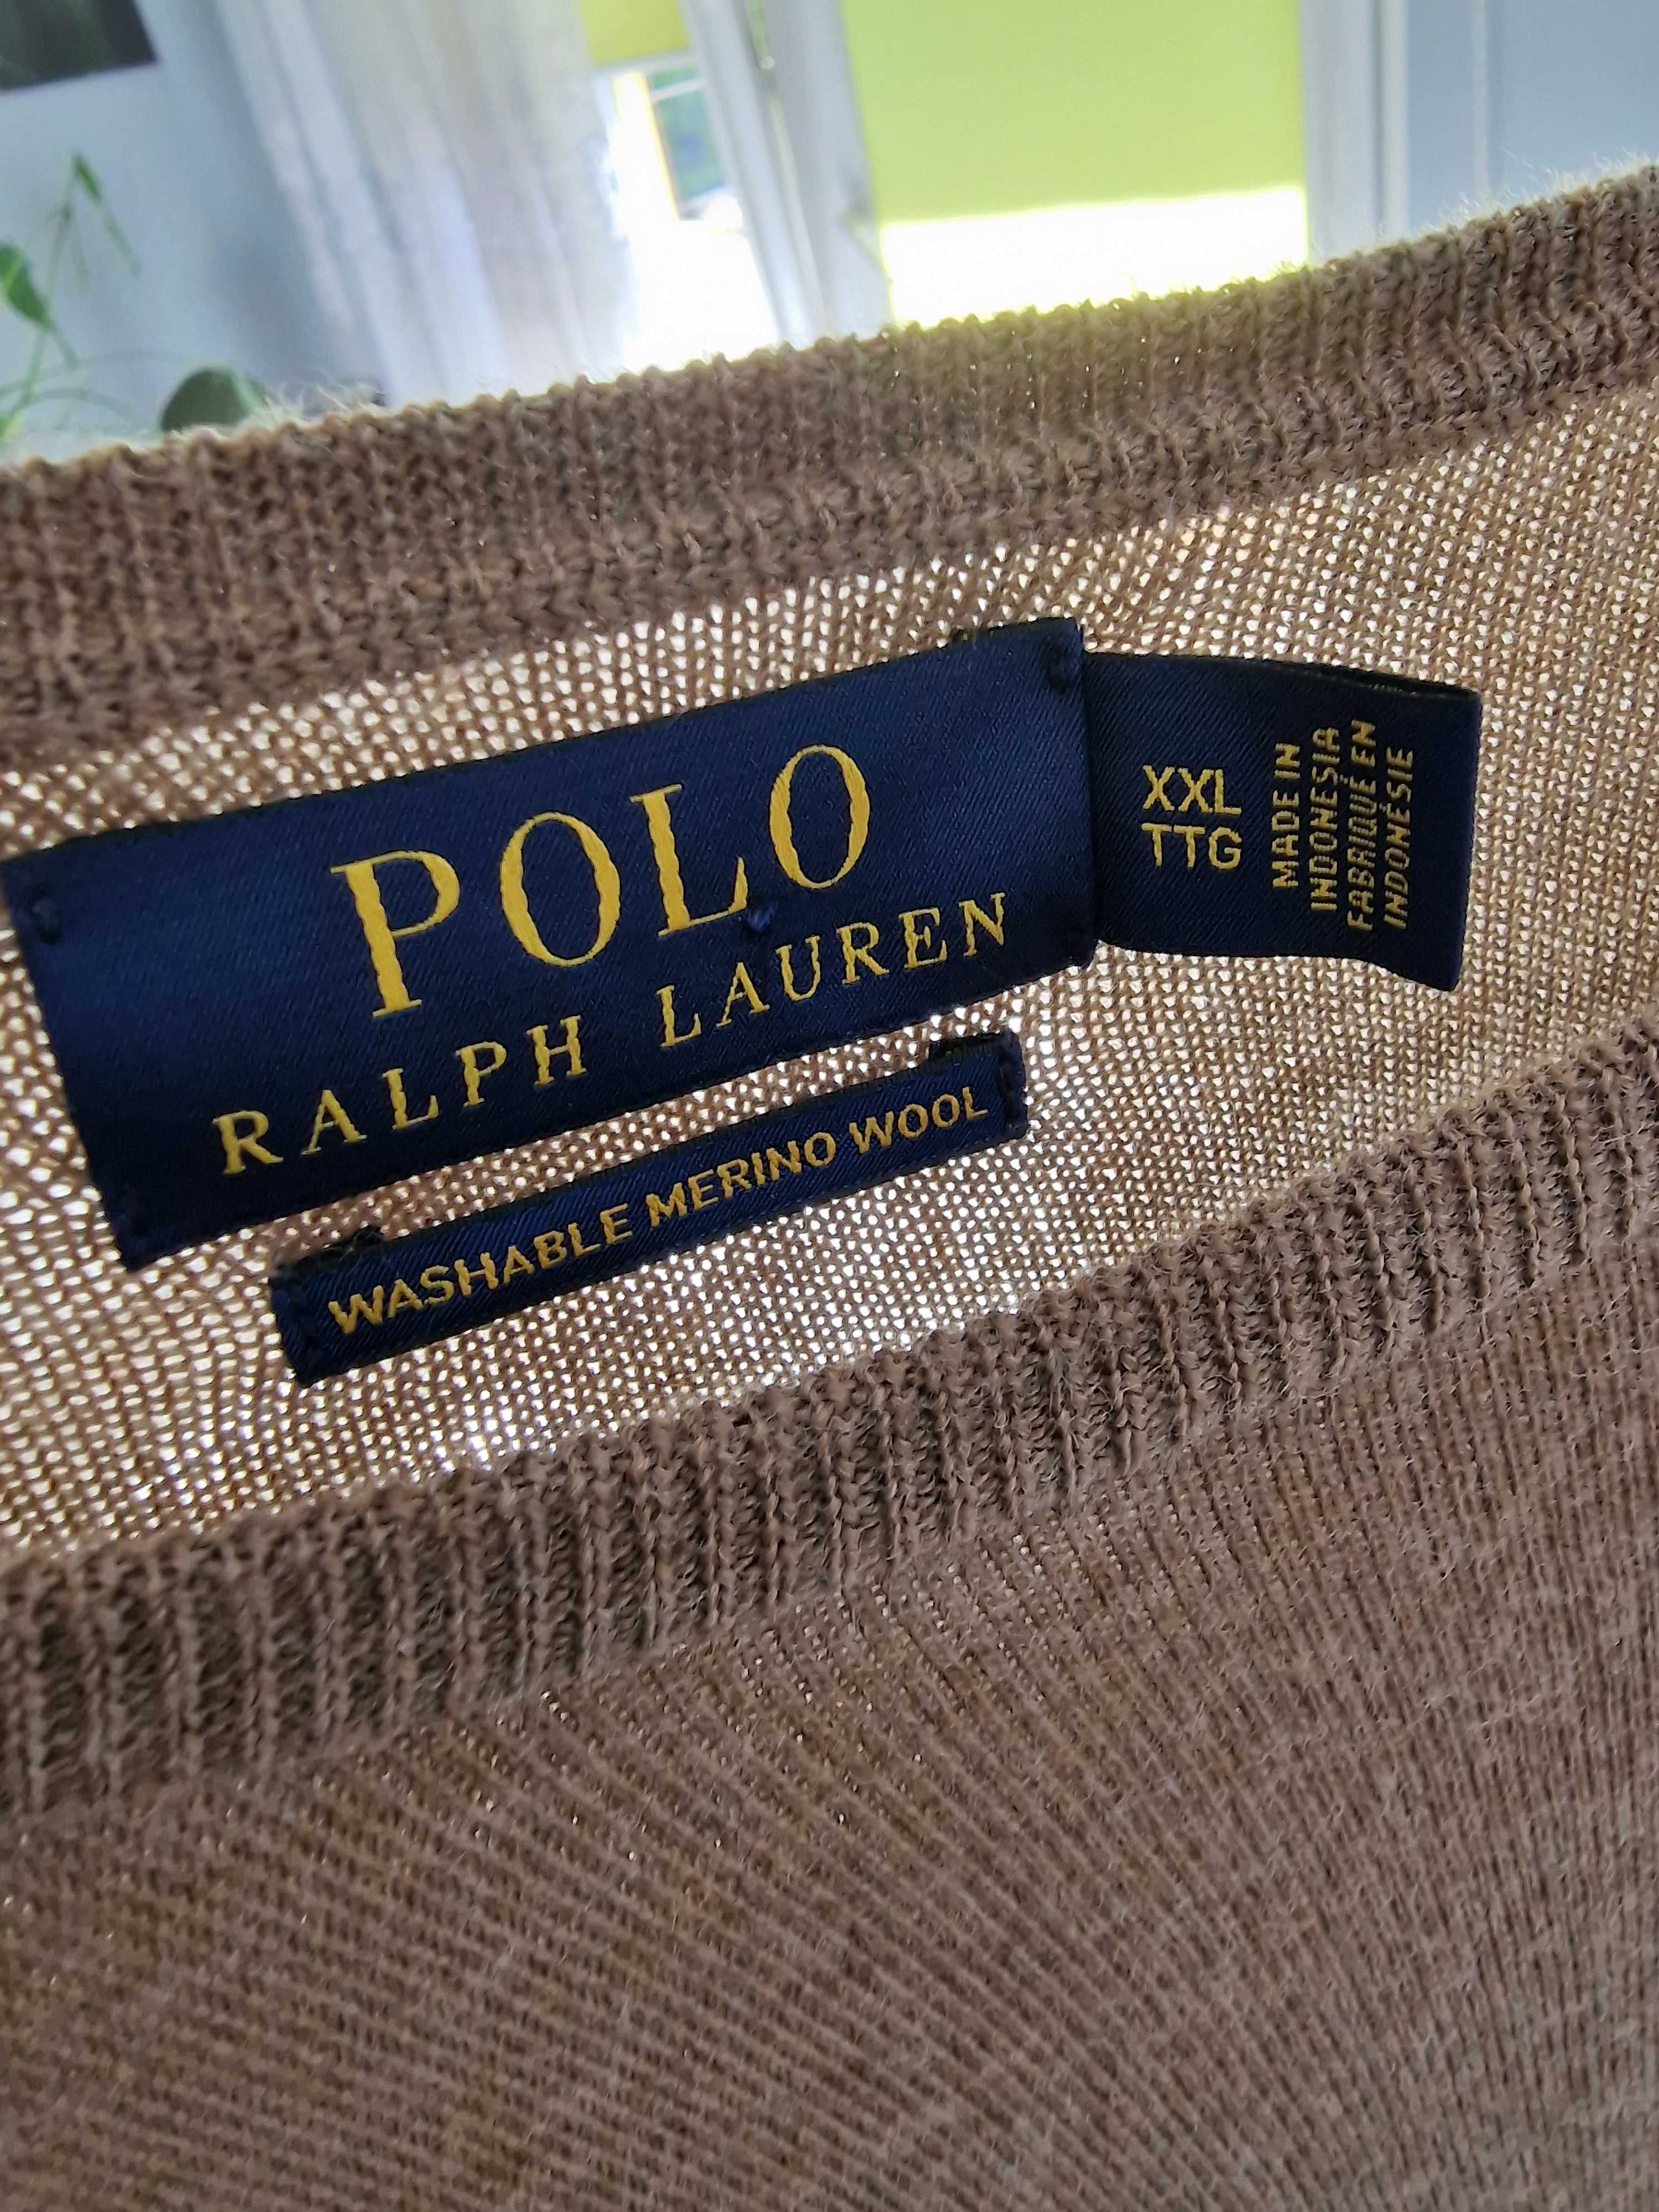 Męski sweter POLO Ralph Lauren, brązowy, roz.XXL, merio wool, dziruka